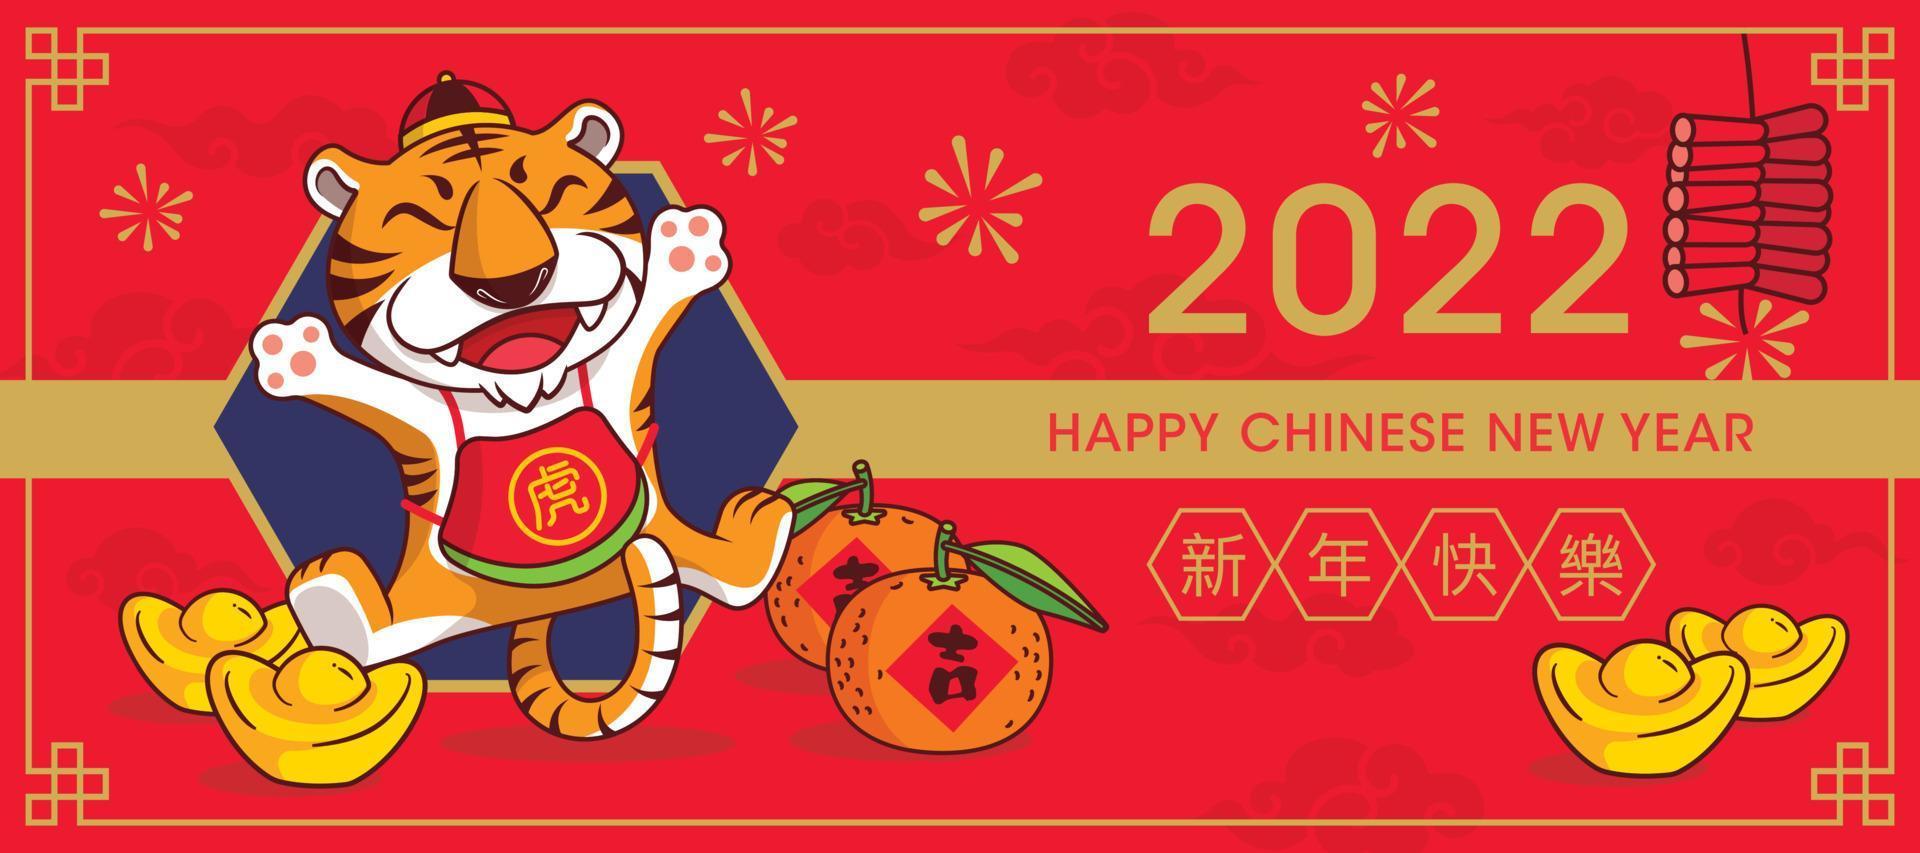 Banner de saudação de feliz ano novo chinês de 2022 com desenho de tigre fofo vetor